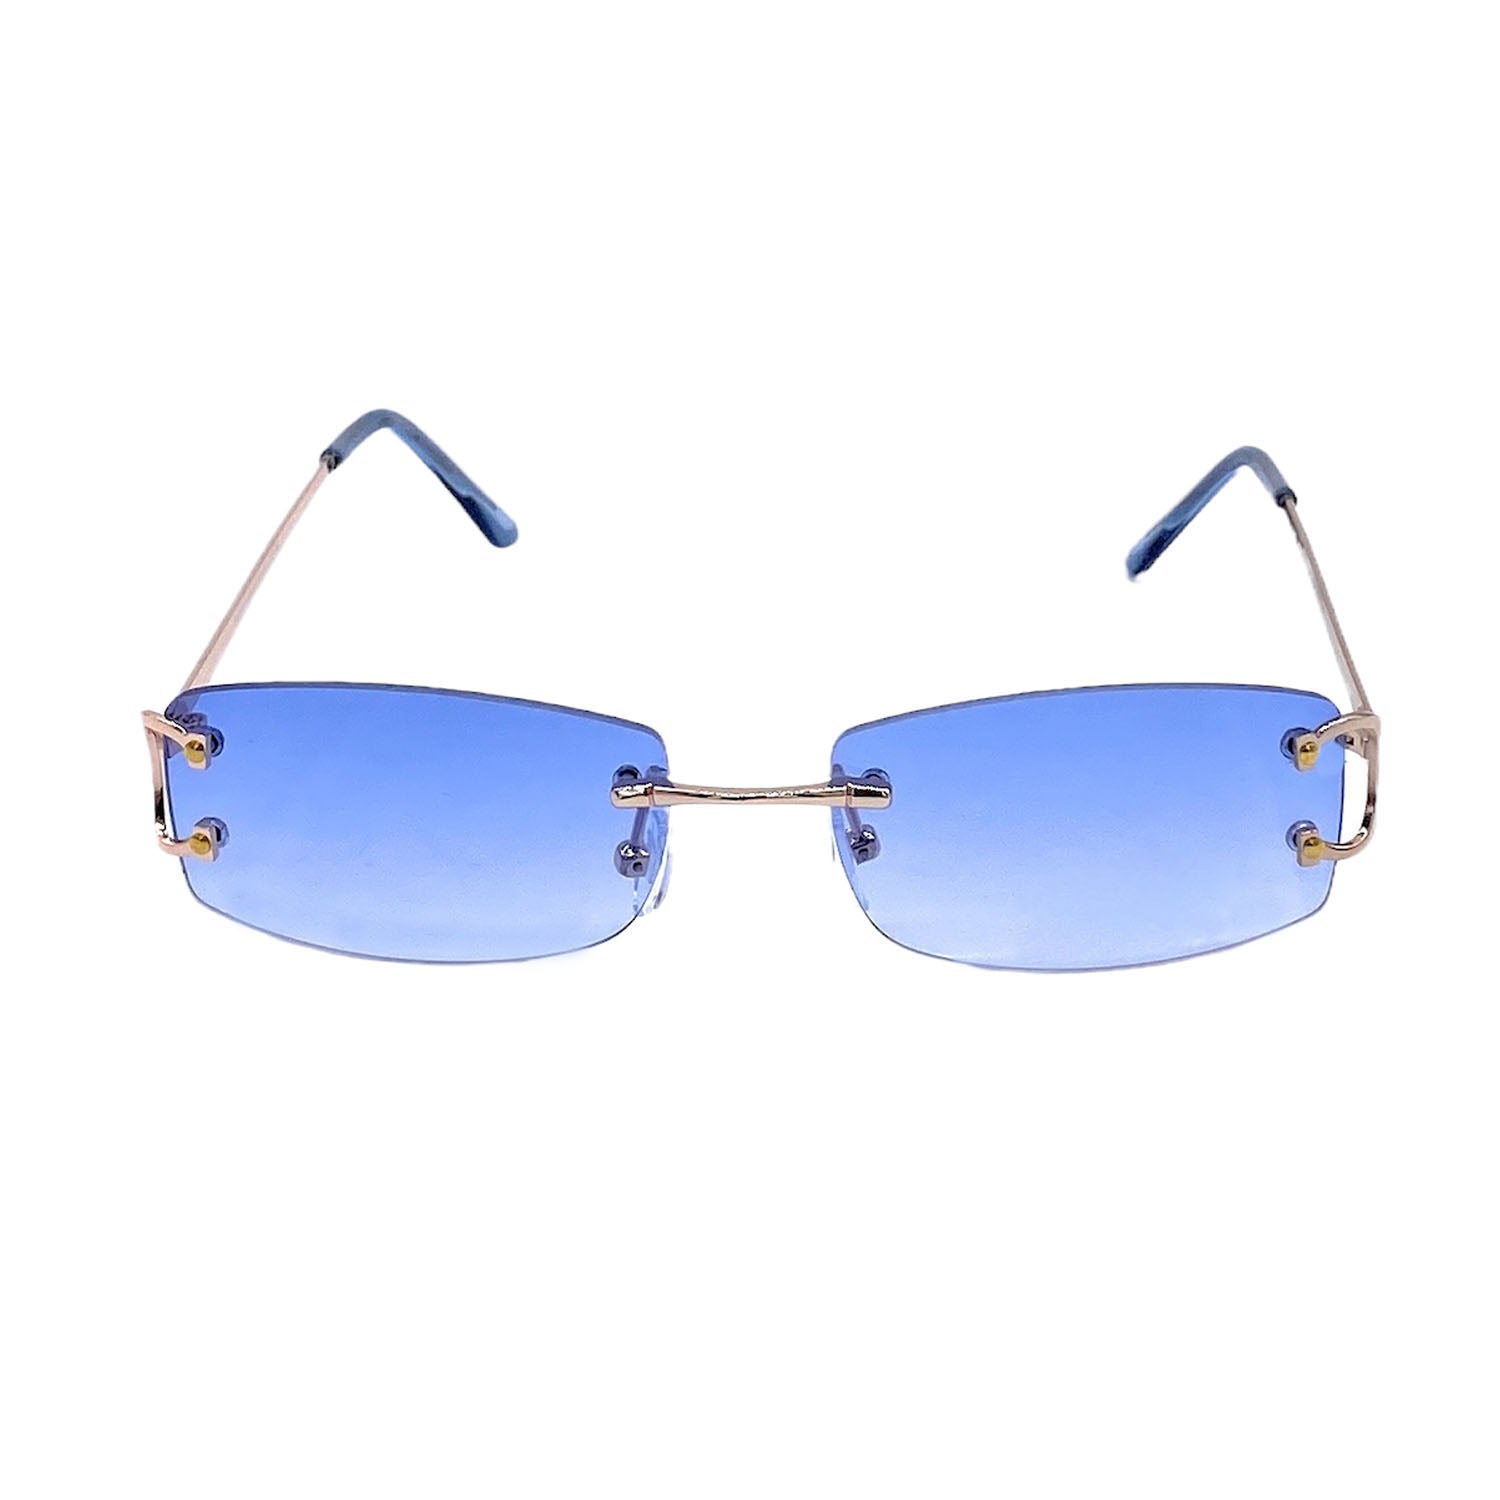 Black Modern Rimless Rectangle Sunglasses by Sorella Boutique